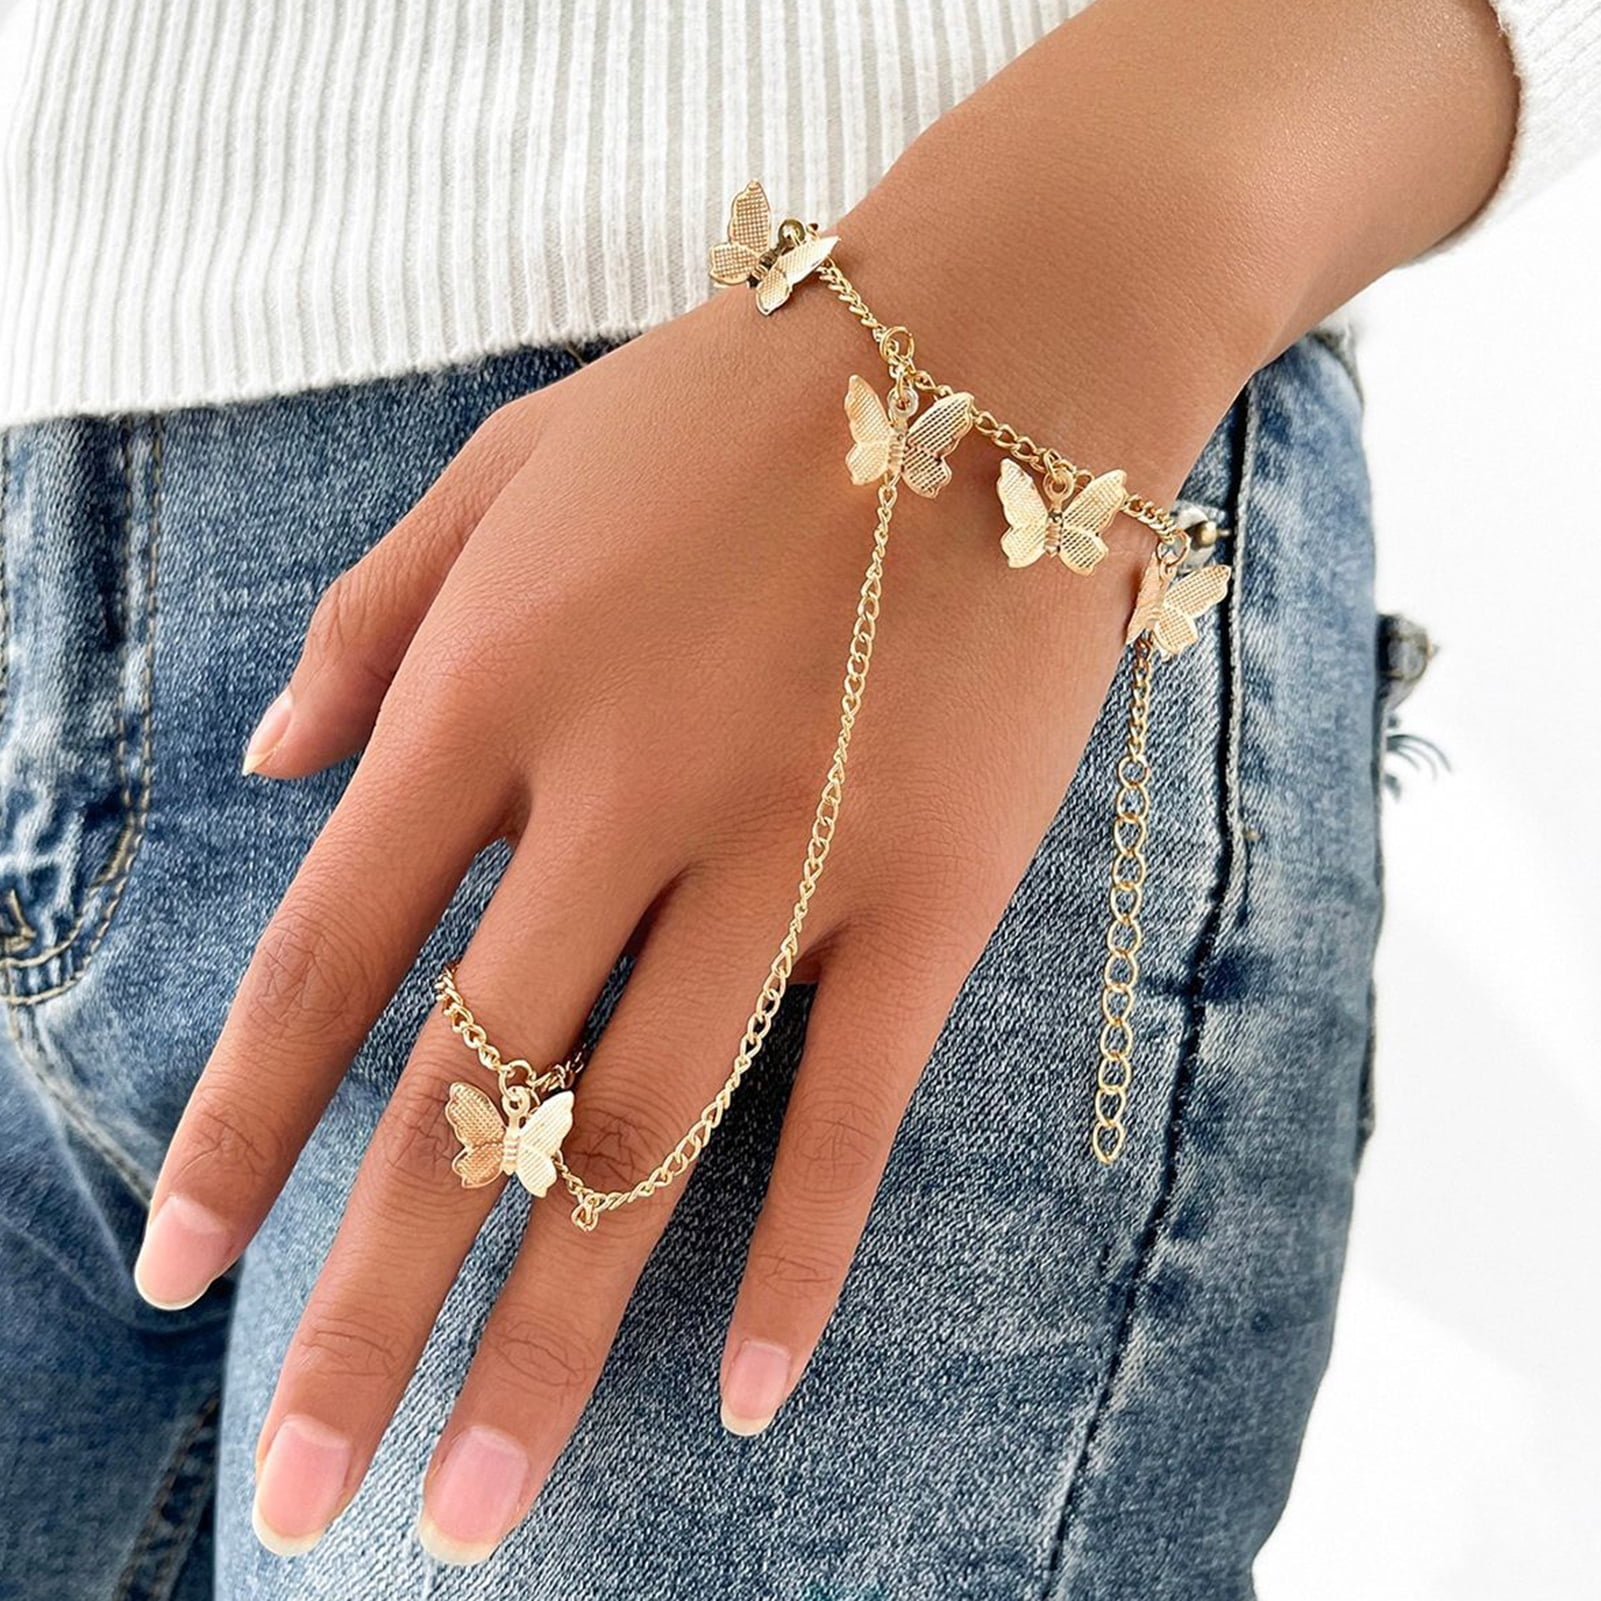 New Boho Finger Ring Bracelet Stainless Steel Hand Chain Bracelet Connected  Finger for Women Girls Jewelry Dropshipping - AliExpress